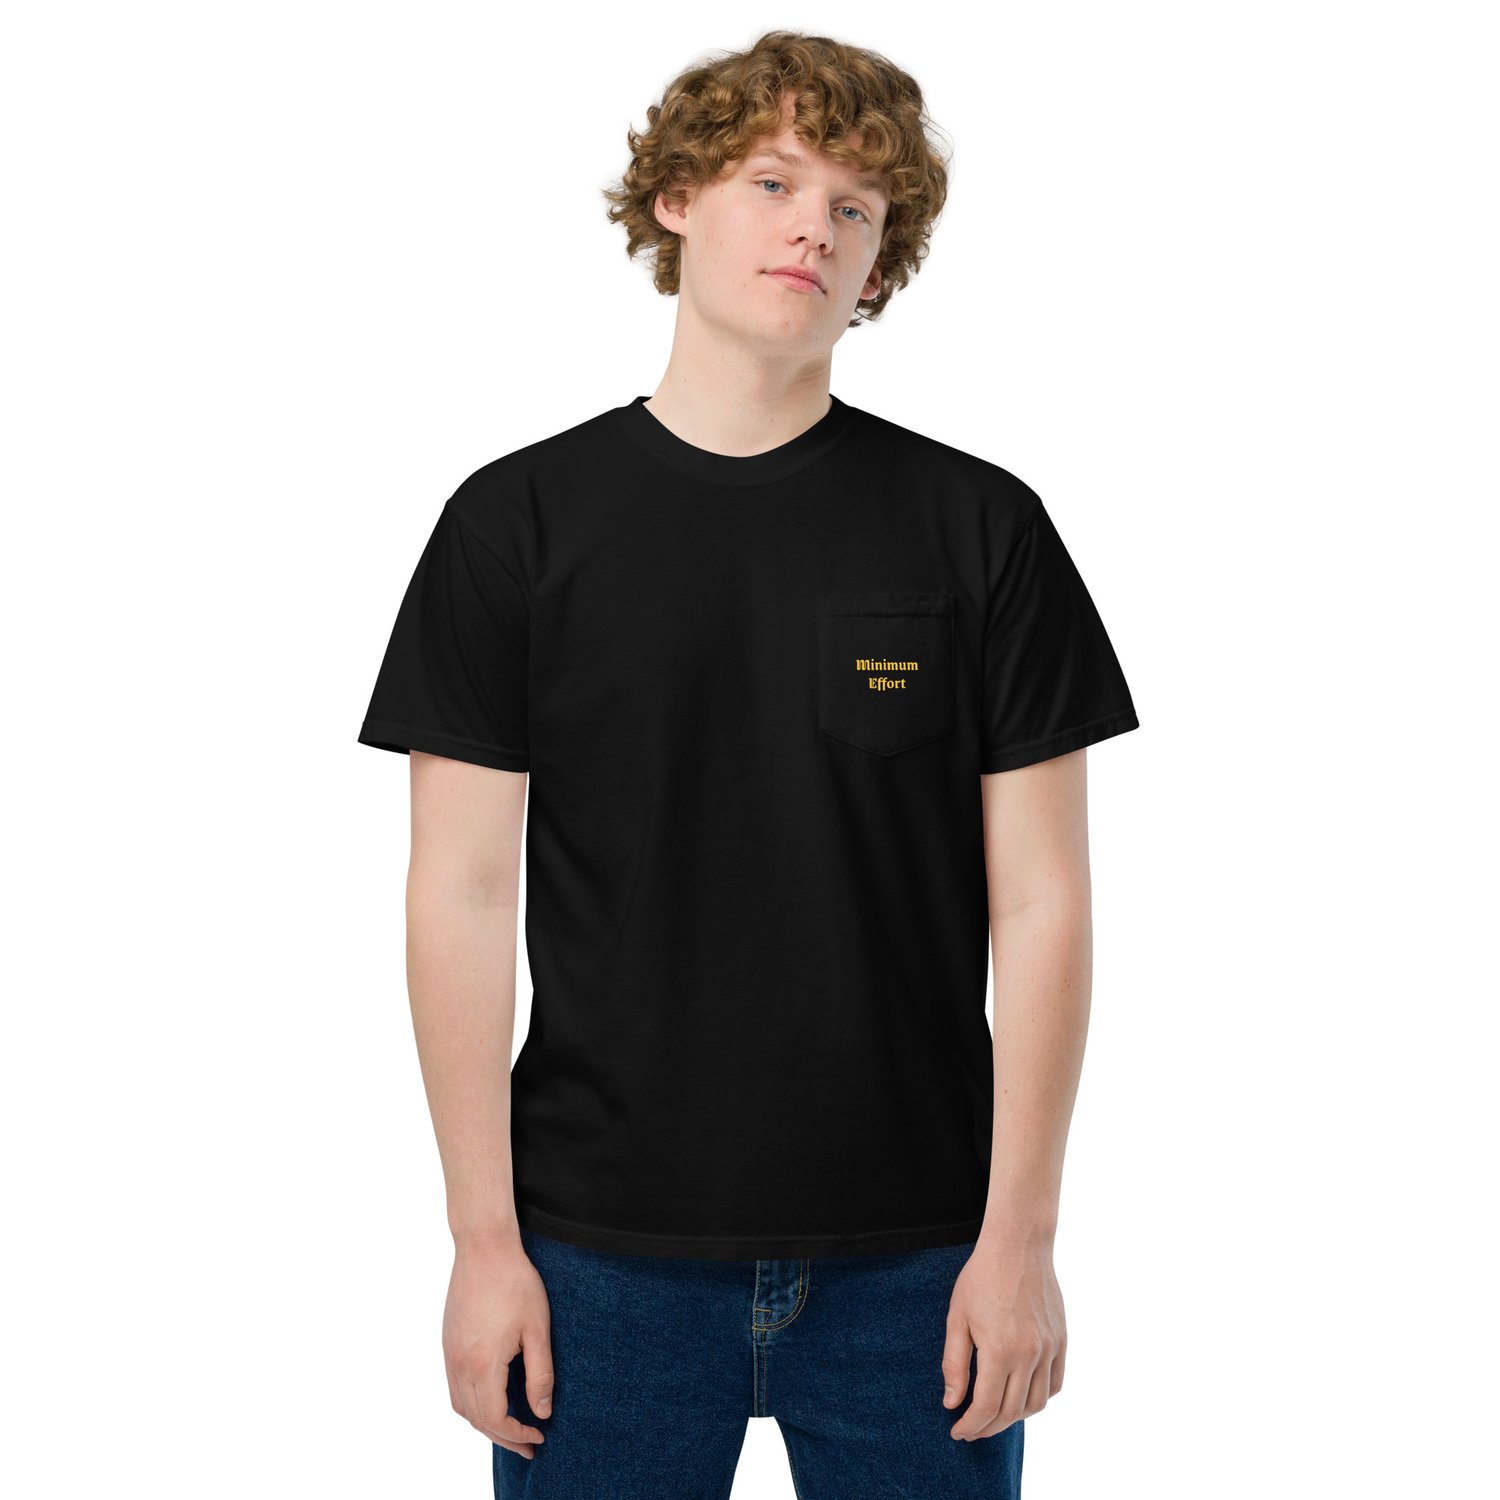 Image of "Minimum Effort" Unisex garment-dyed pocket t-shirt